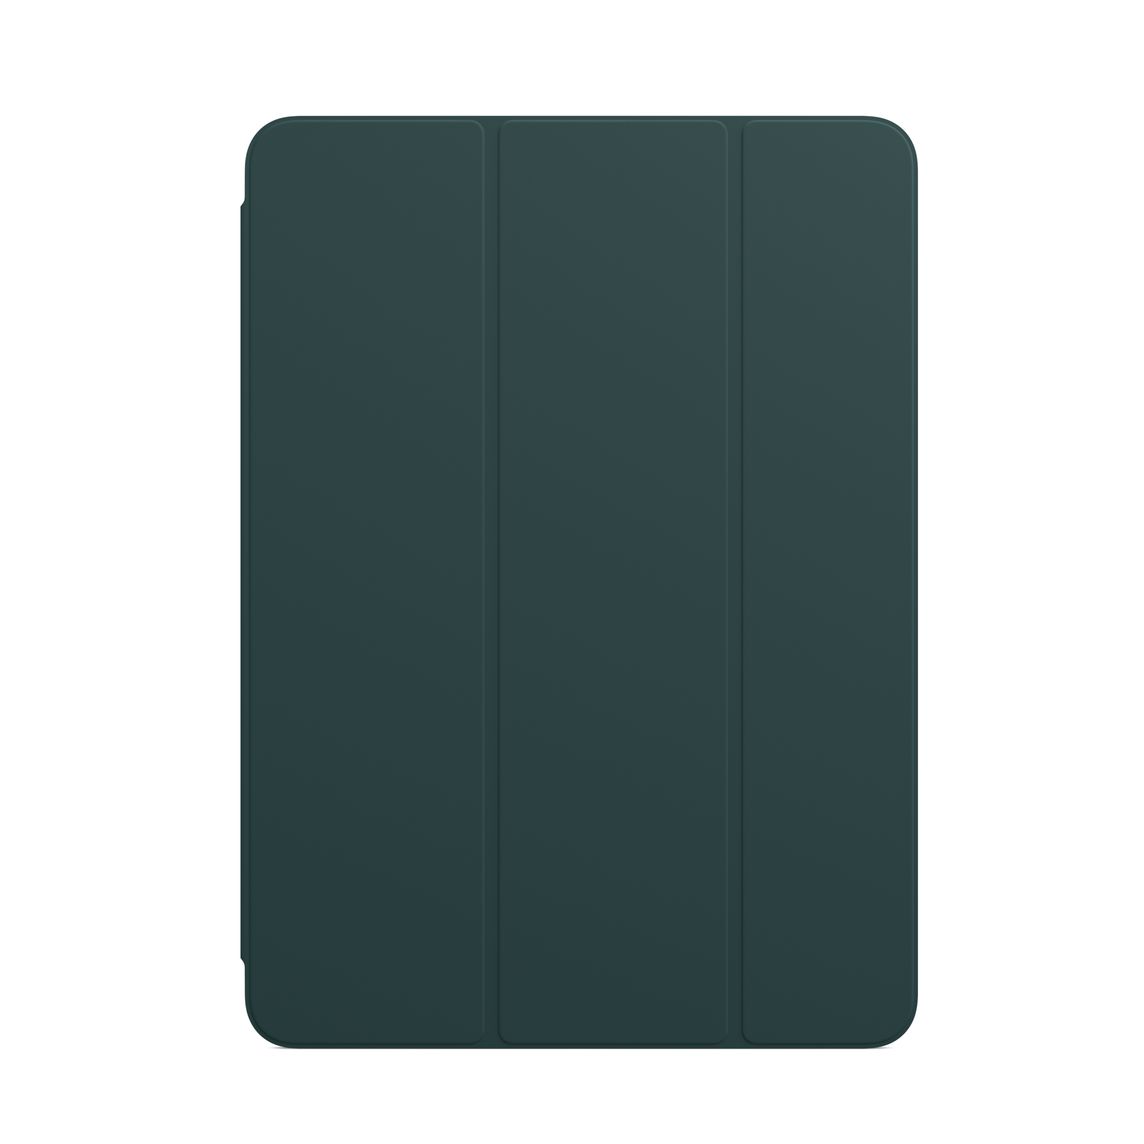 Фото — Чехол для планшета Apple Smart Folio для iPad Air (4‑го поколения), «штормовой зелёный»